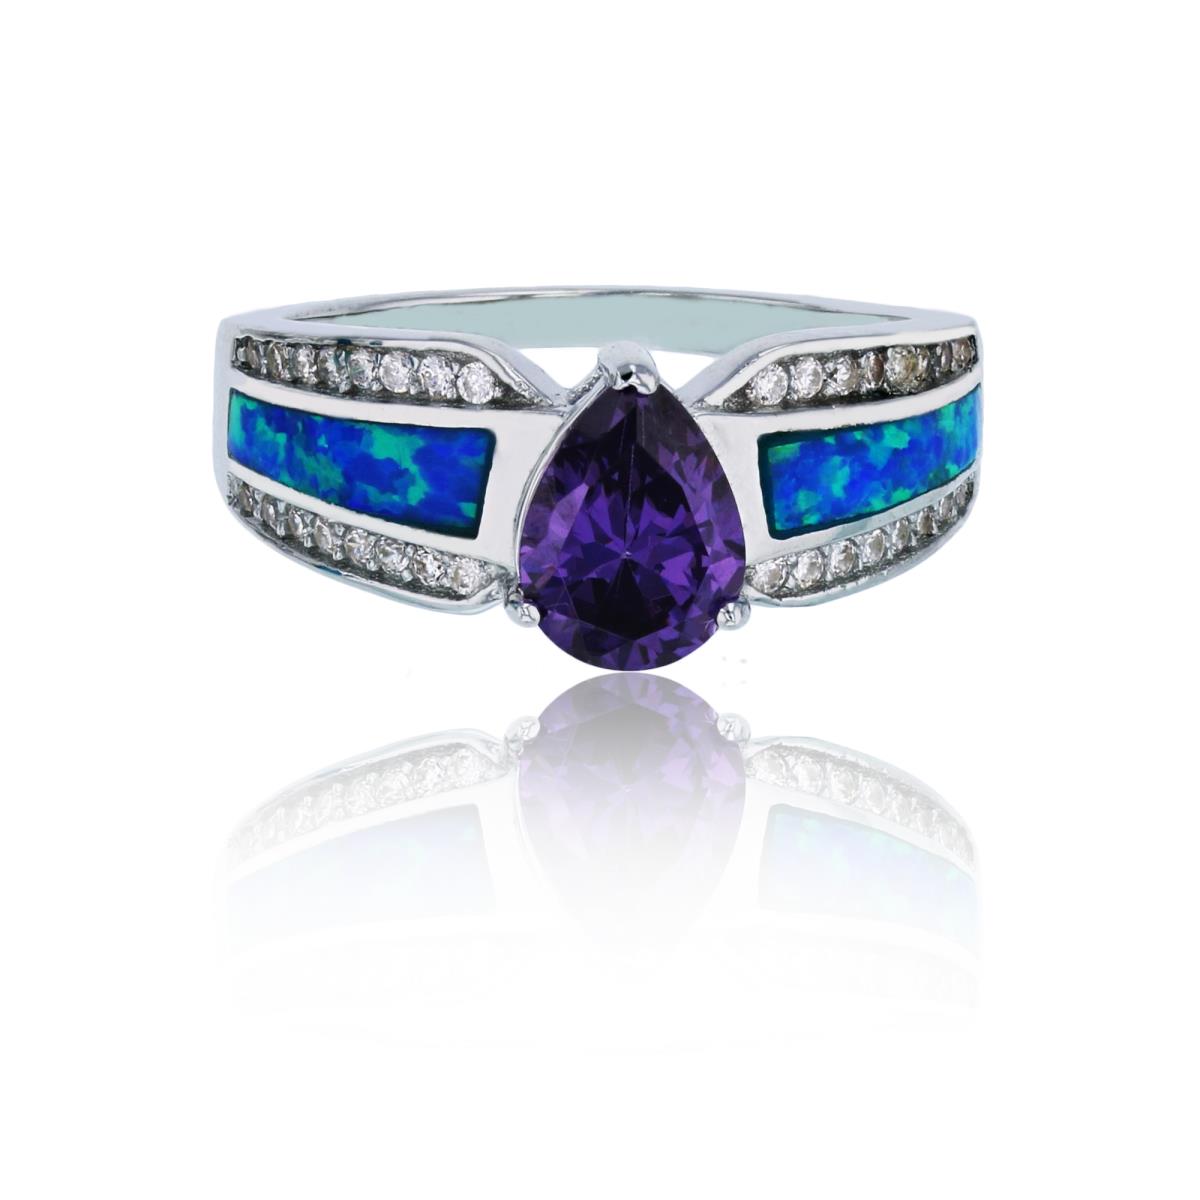 Sterling Silver Rhodium 8x6mm Amethyst Pear Cut with Created Blue Opal & CZ Sides Fashion Ring